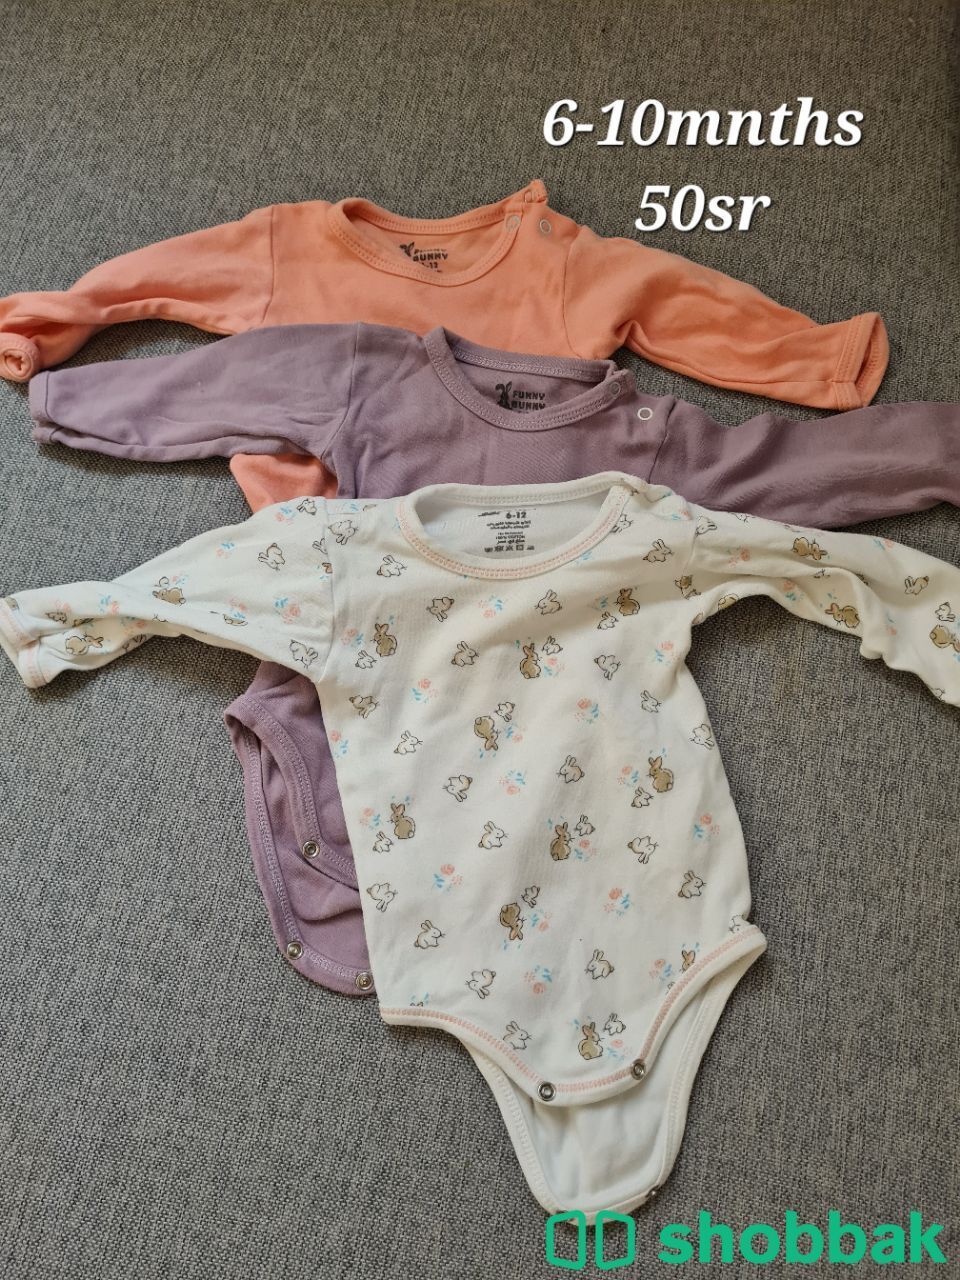 Baby clothes Shobbak Saudi Arabia